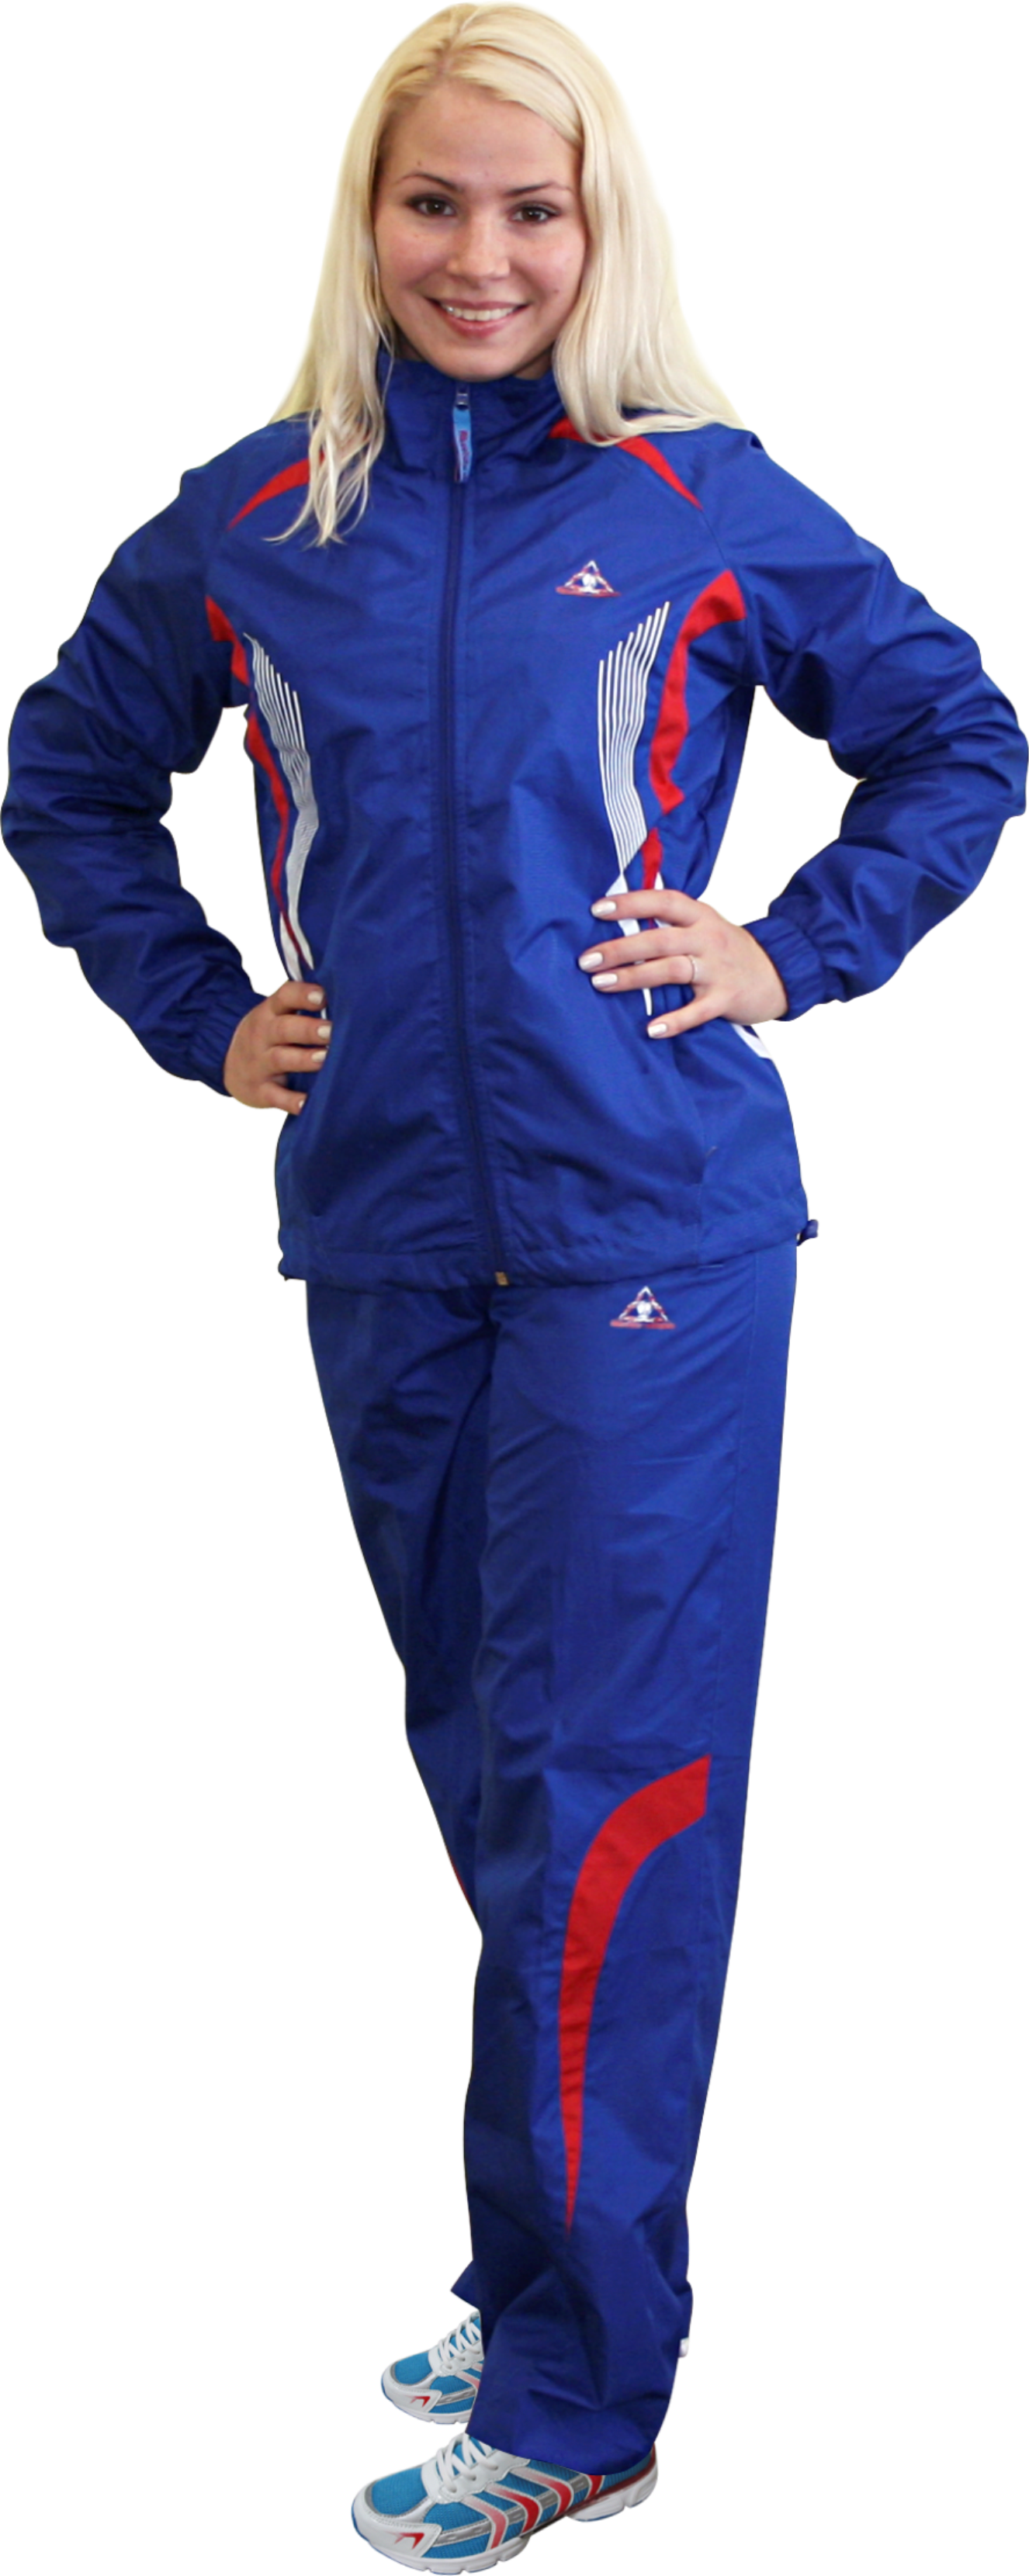 Куртка спортивная Abch жен WTS-Y2843L цв ROYAL/RED/WHITE р.42